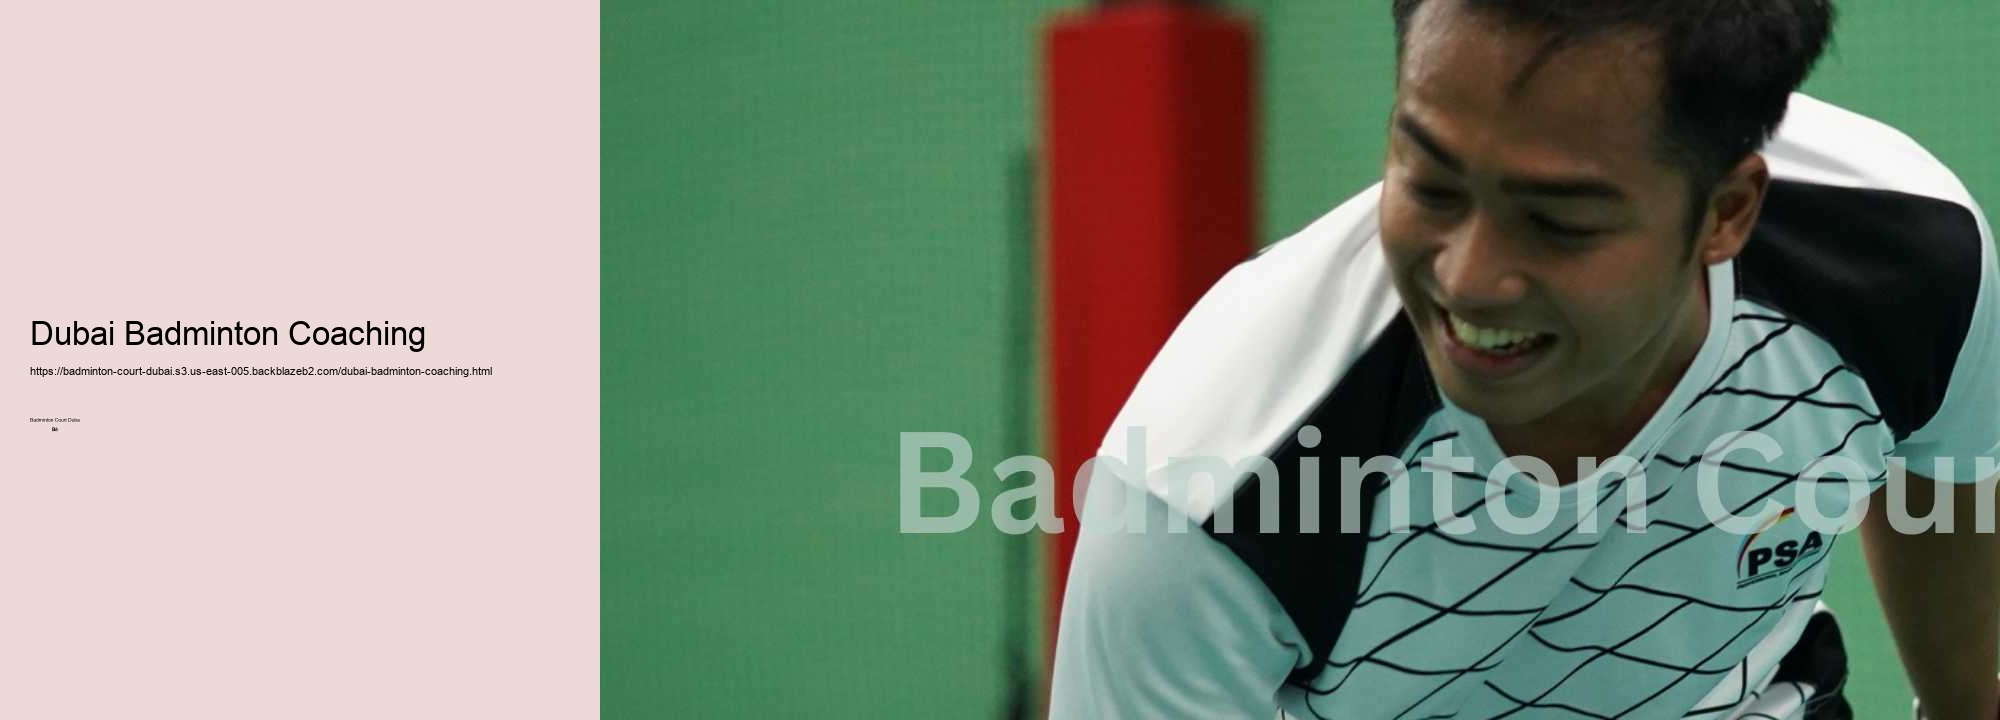 Dubai Badminton Coaching